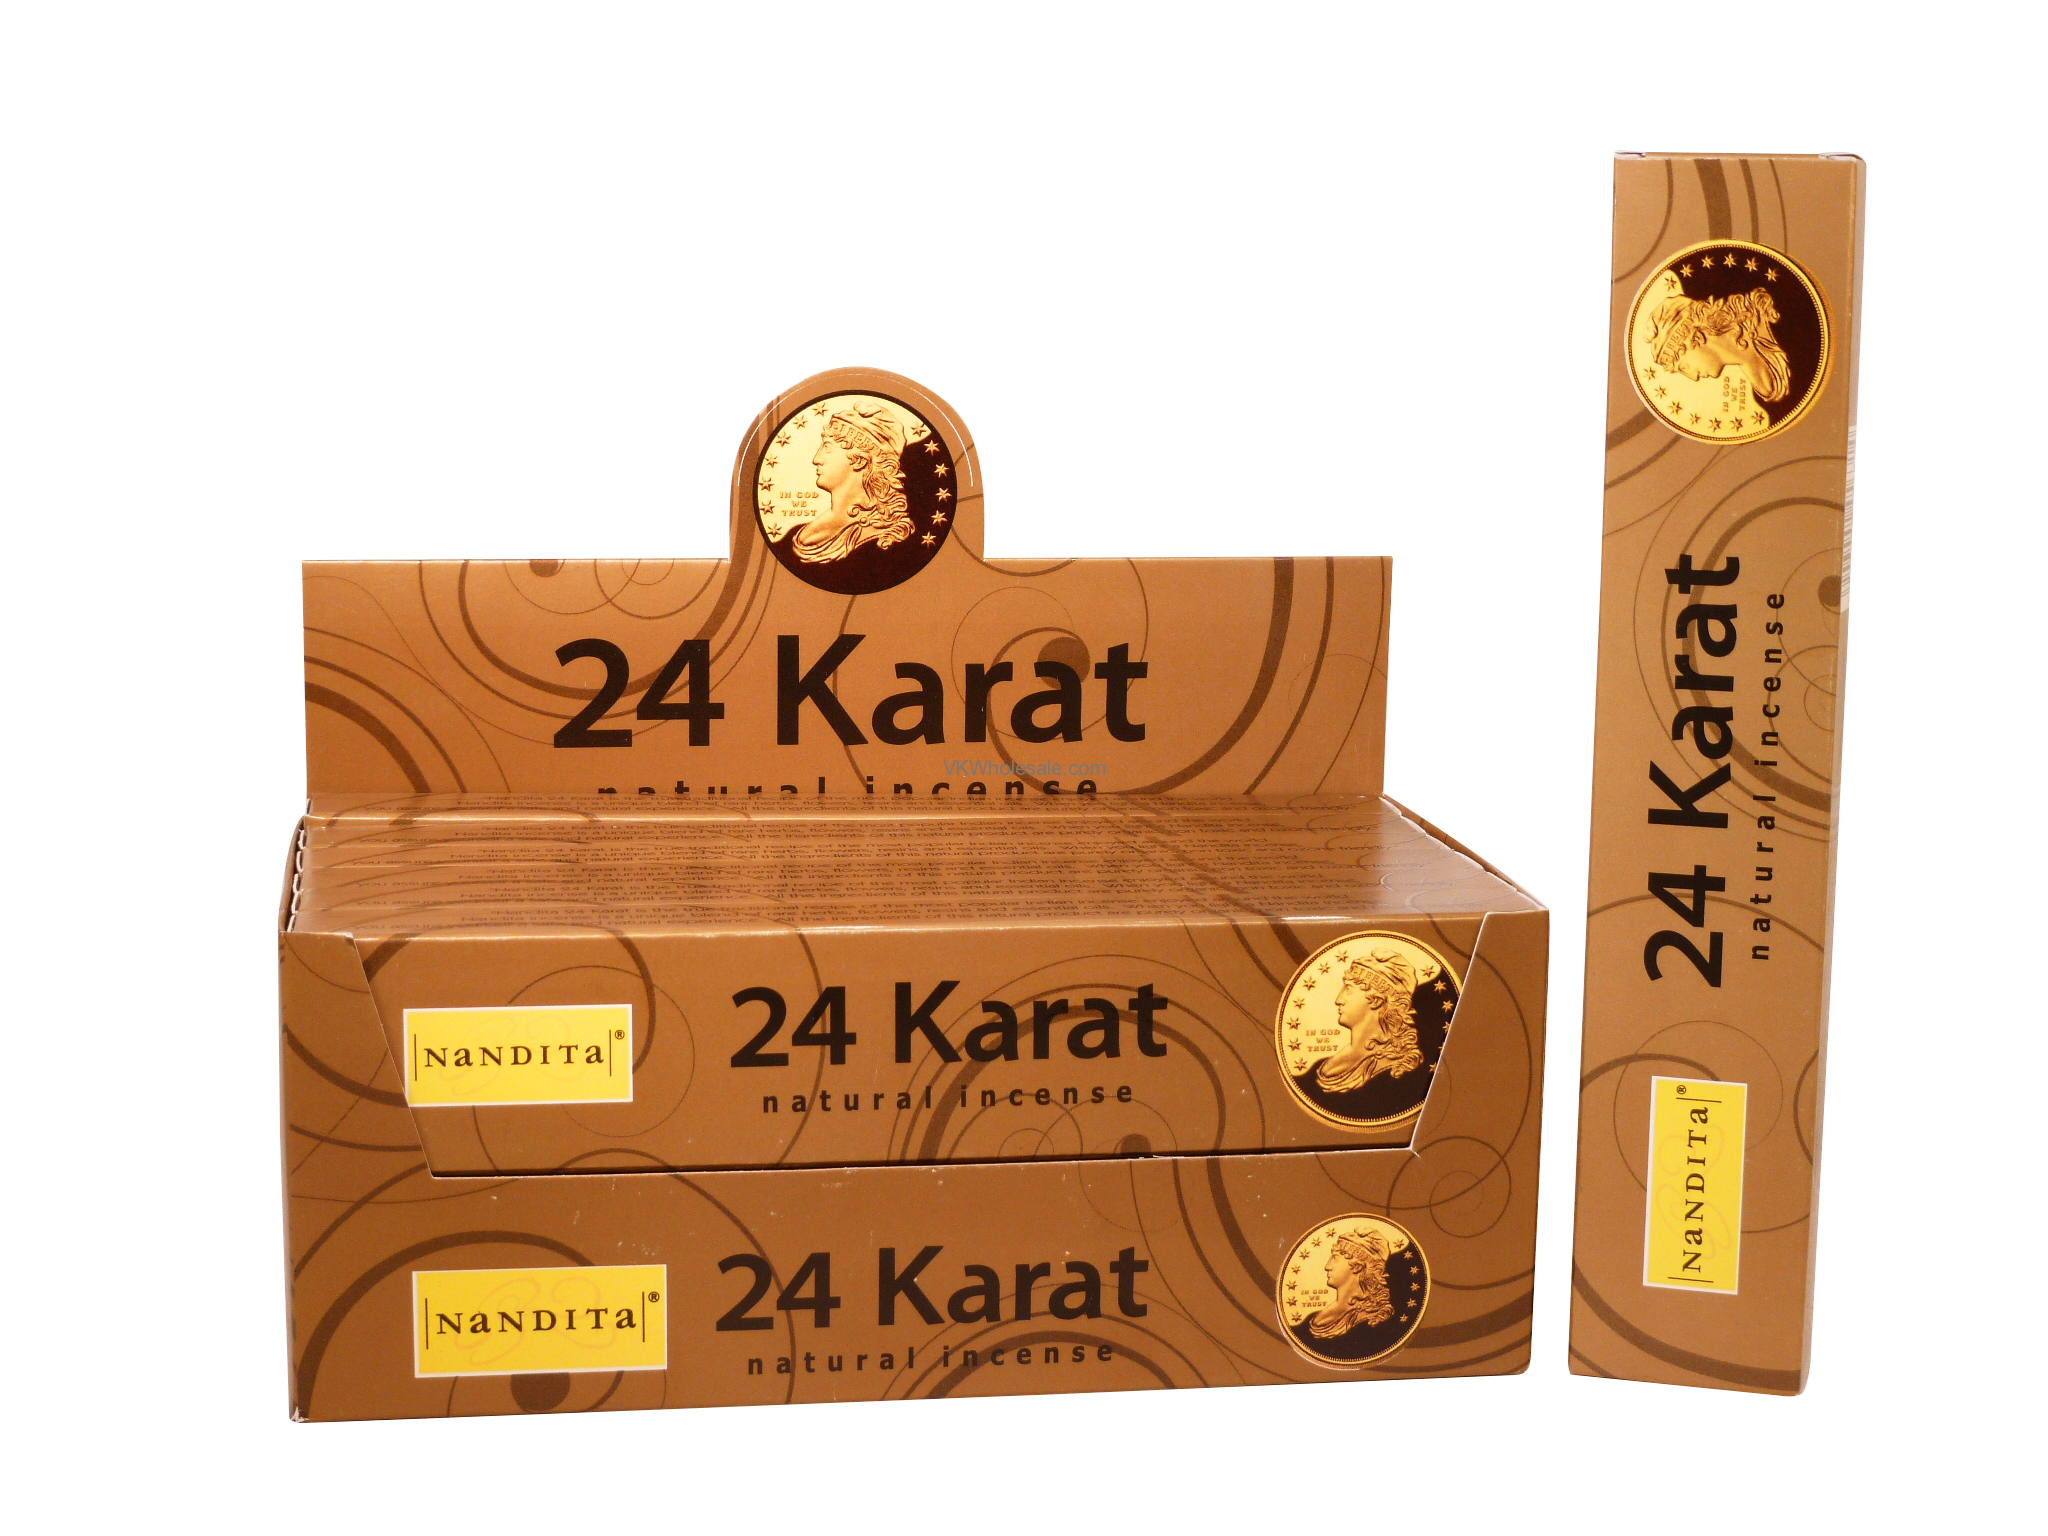 24 Karat Natural Incense Nandita